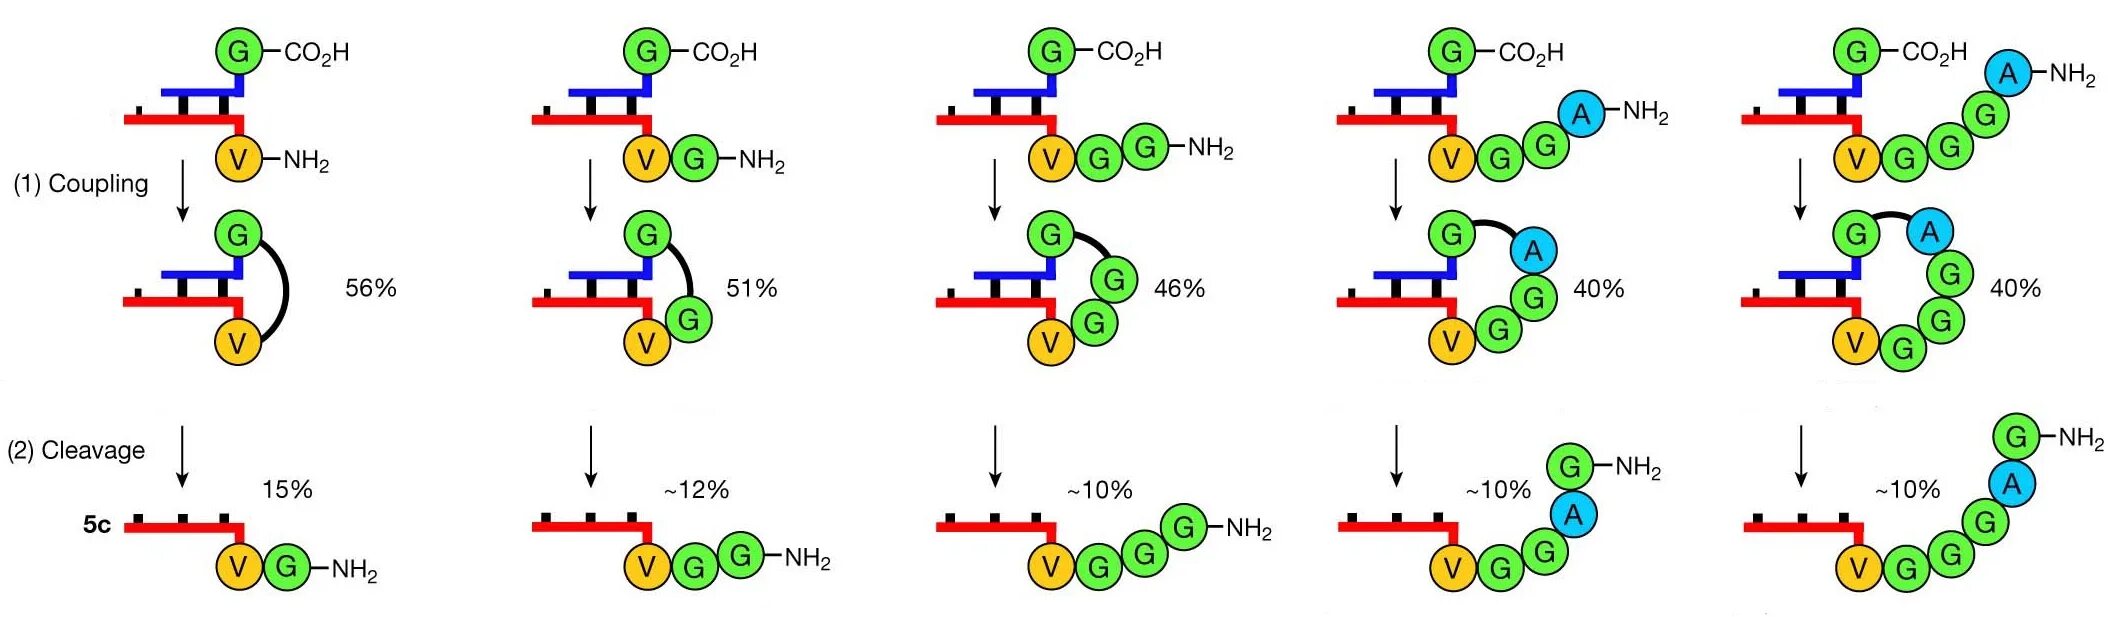 Синтез полипептидов экспортируемых белков. Аланин ТРНК. Синтез полипептида обрывается пример мутаций. Антикода Валина.